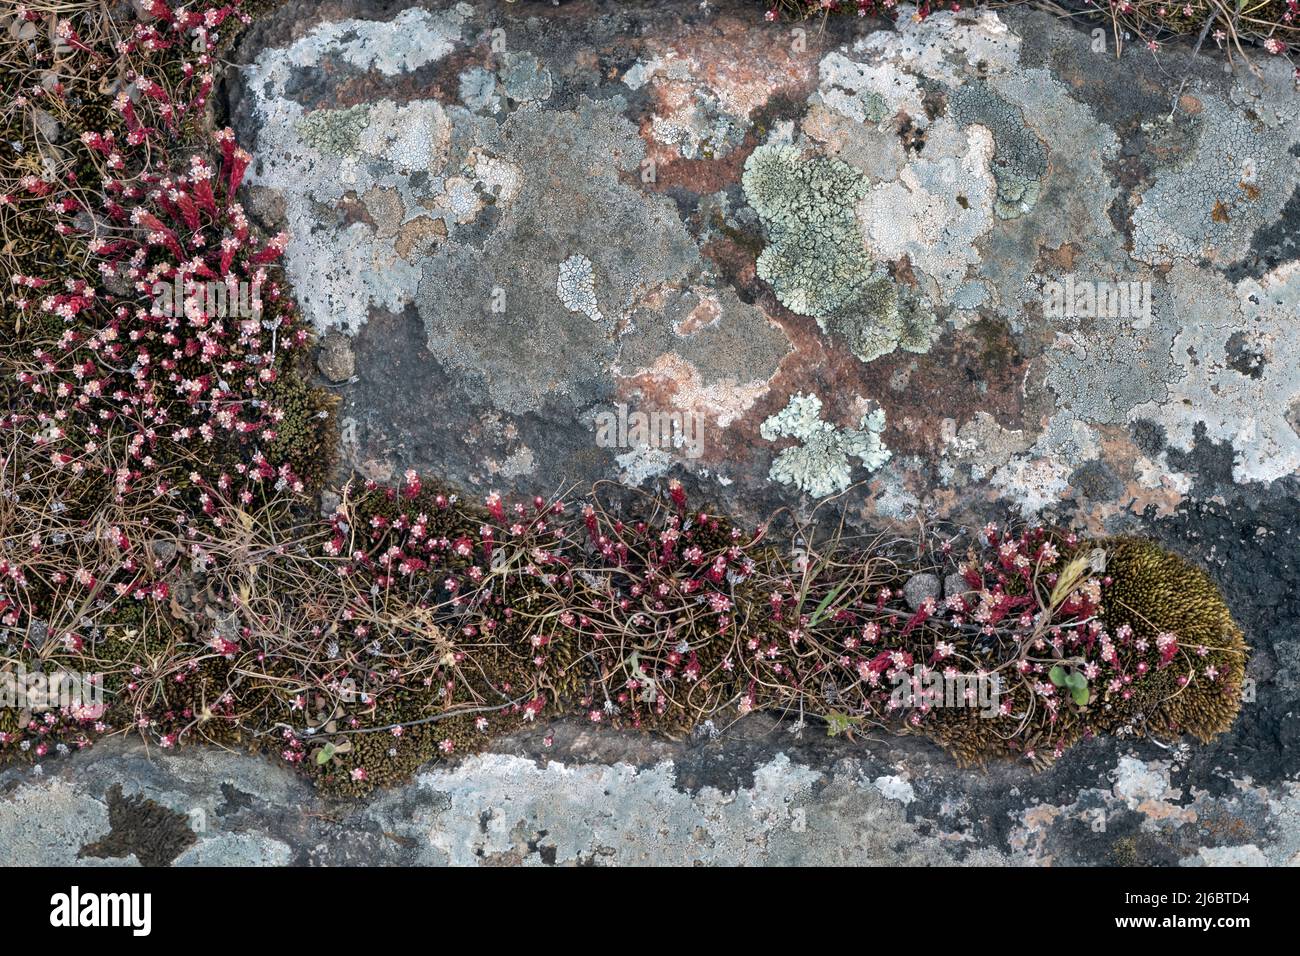 Sedum rubens, Red stonecrop. Levsos Stock Photo